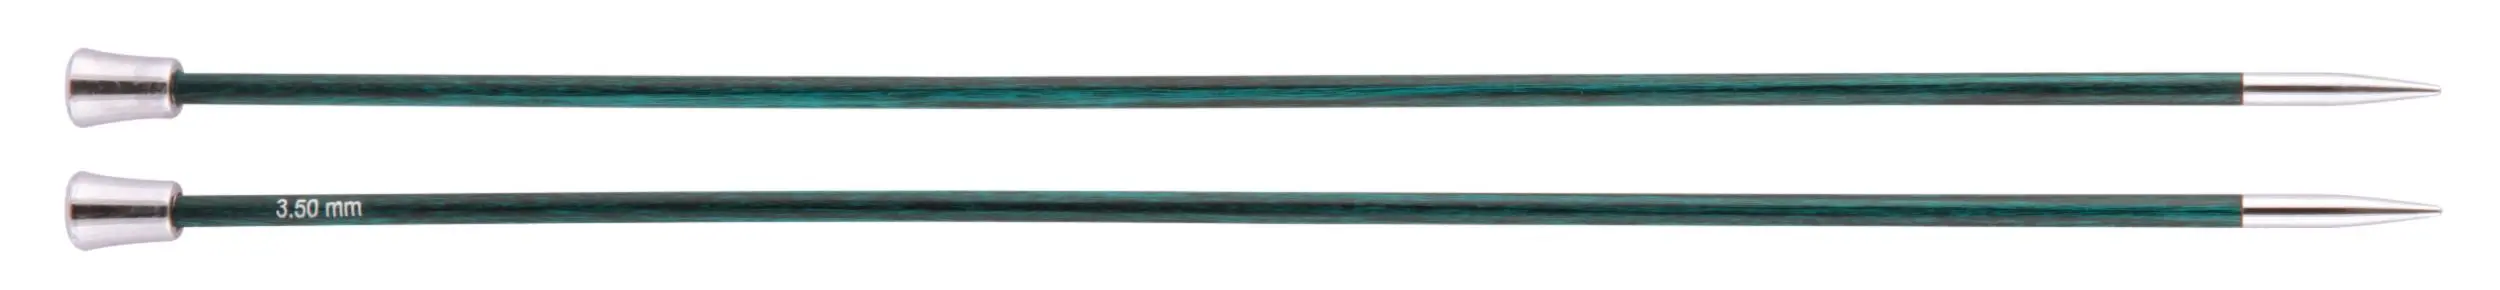 29233 Спиці прямі Royale KnitPro, 40 см, 3.50 мм